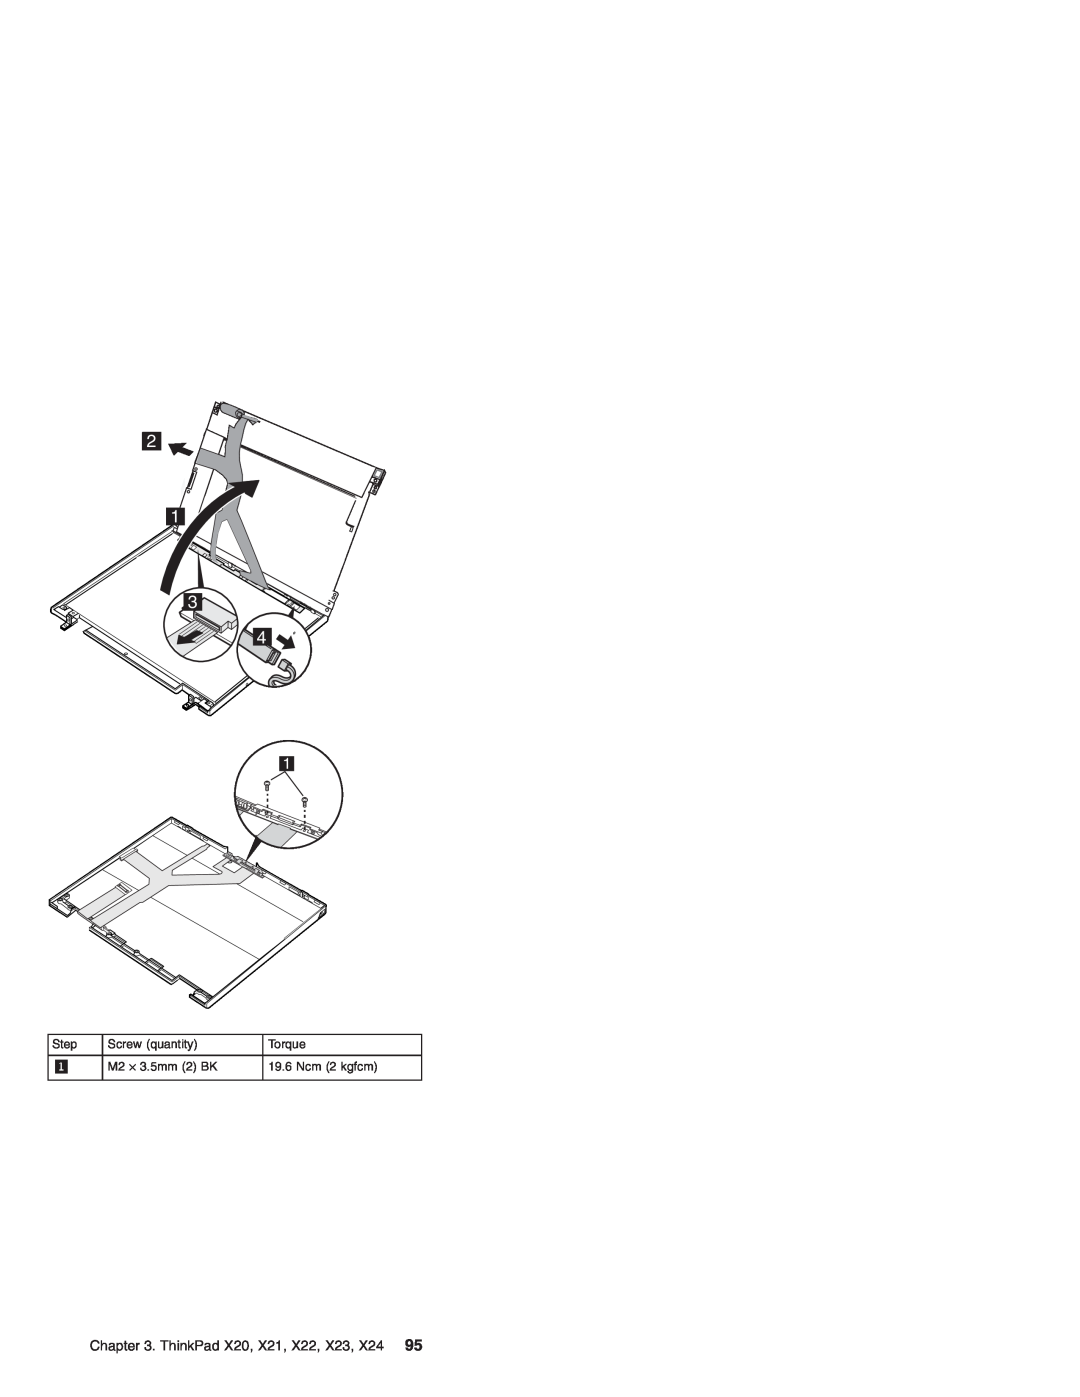 IBM manual ThinkPad X20, X21, X22, X23, X24, Step, Screw quantity, Torque, M2 ⋅ 3.5mm 2 BK, Ncm 2 kgfcm 